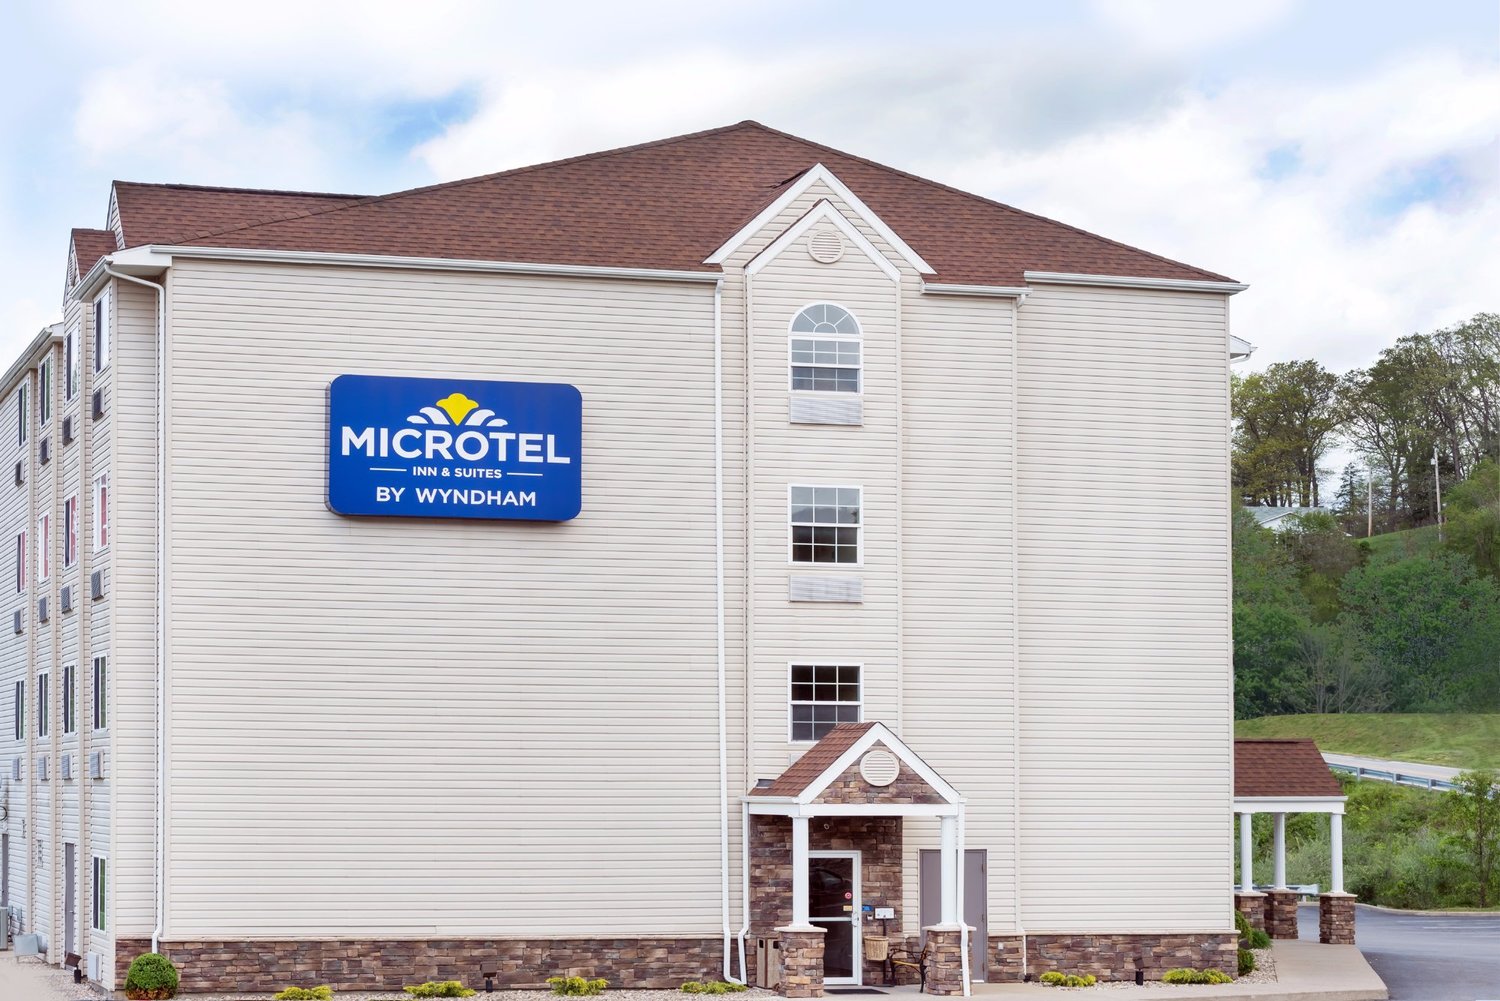 microtel inn & suites by wyndham salt lake city airport, salt lake